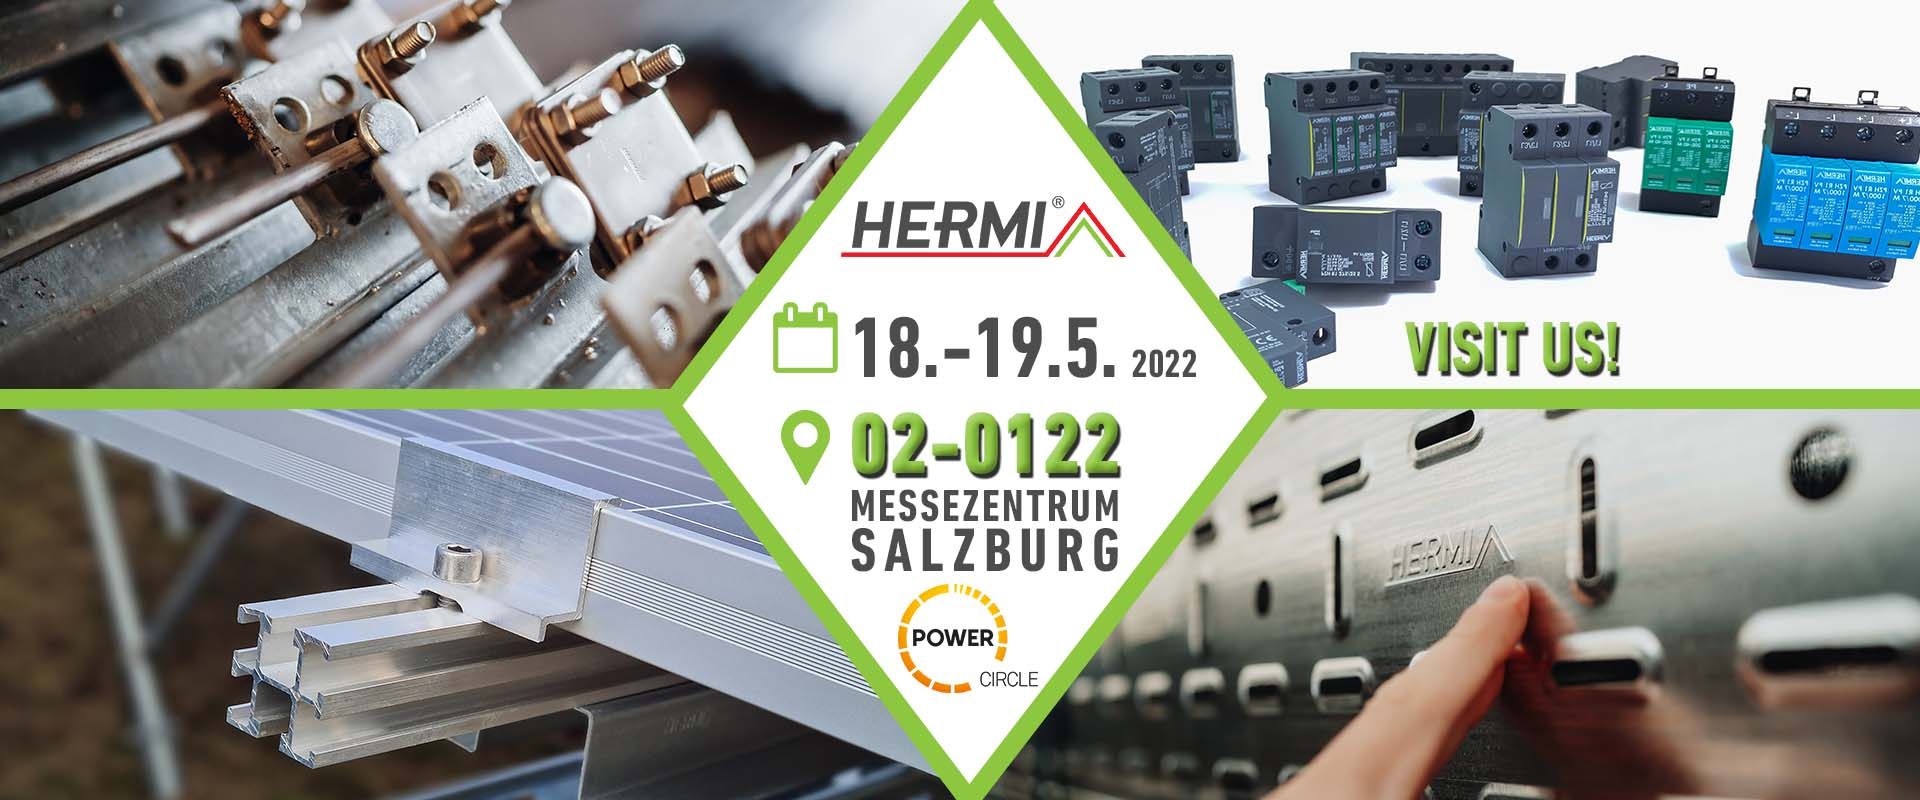 Hermi solutions at Power Circle trade fair, Austria